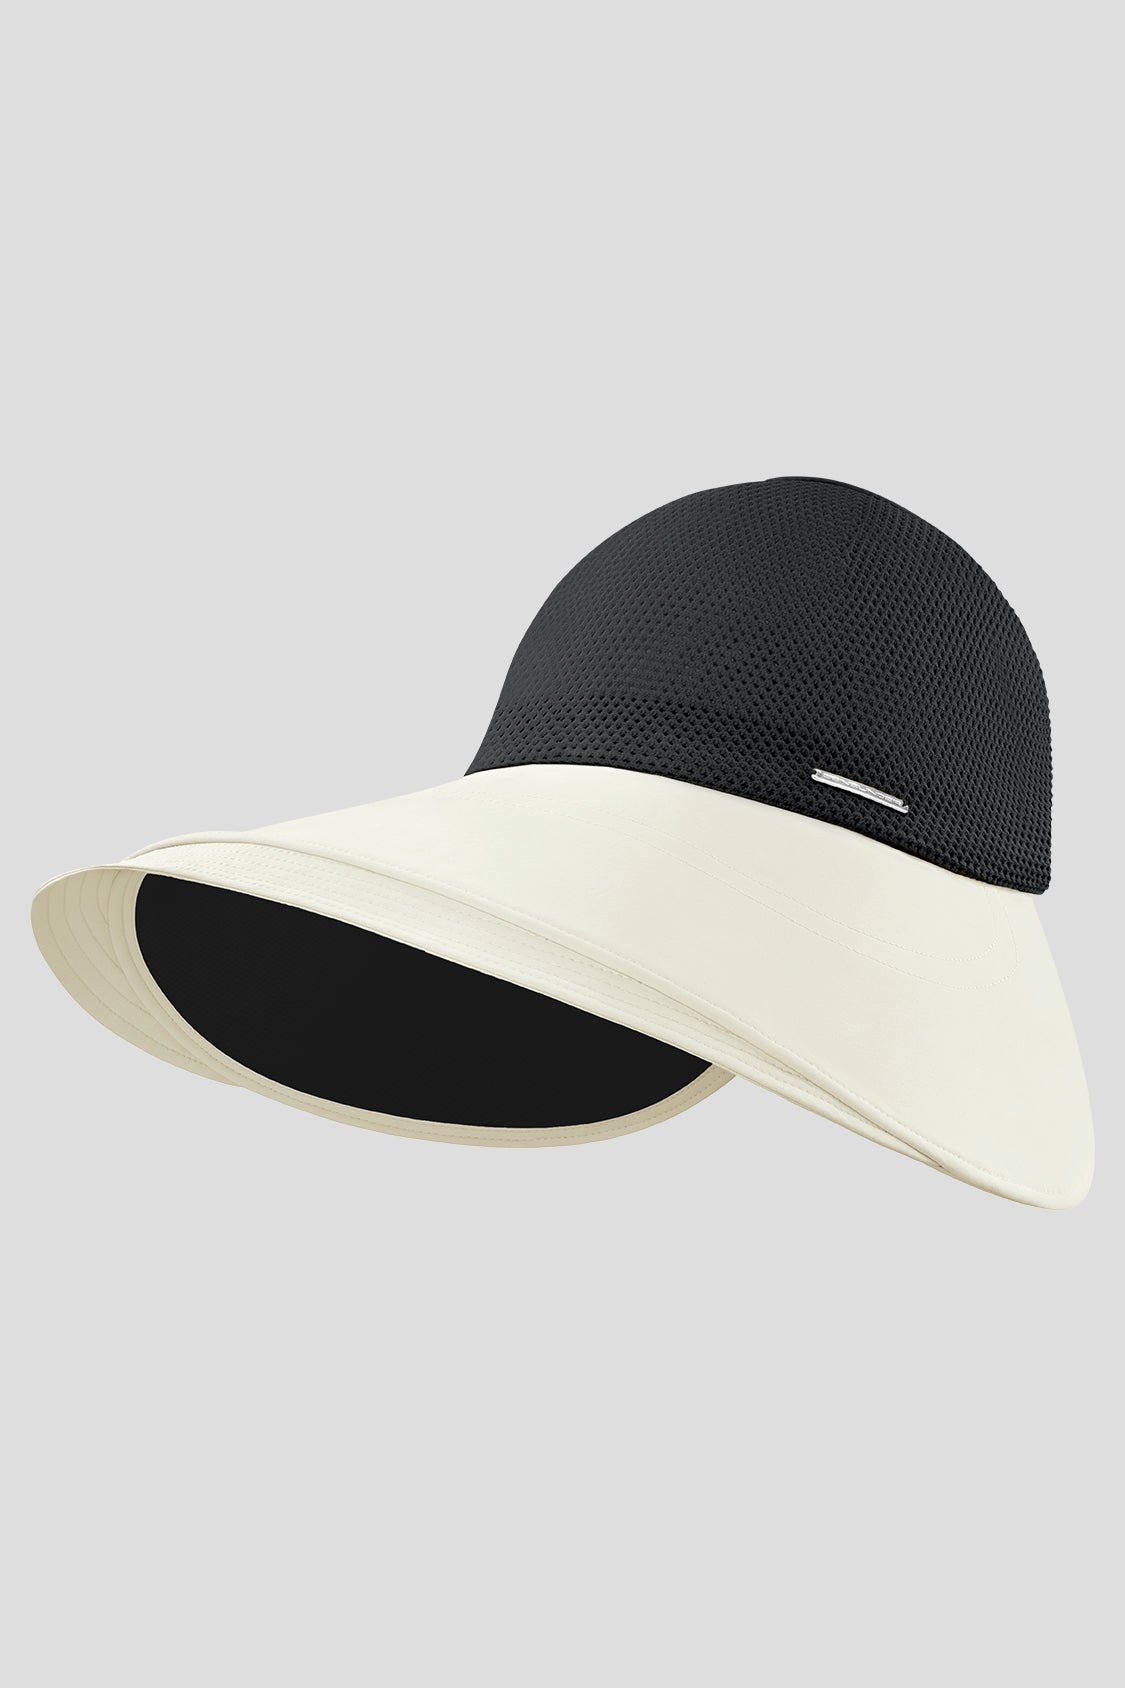 Onni - Women's Wide Brim Bucket Hats UPF50+ Sandstone Brown / 55-58